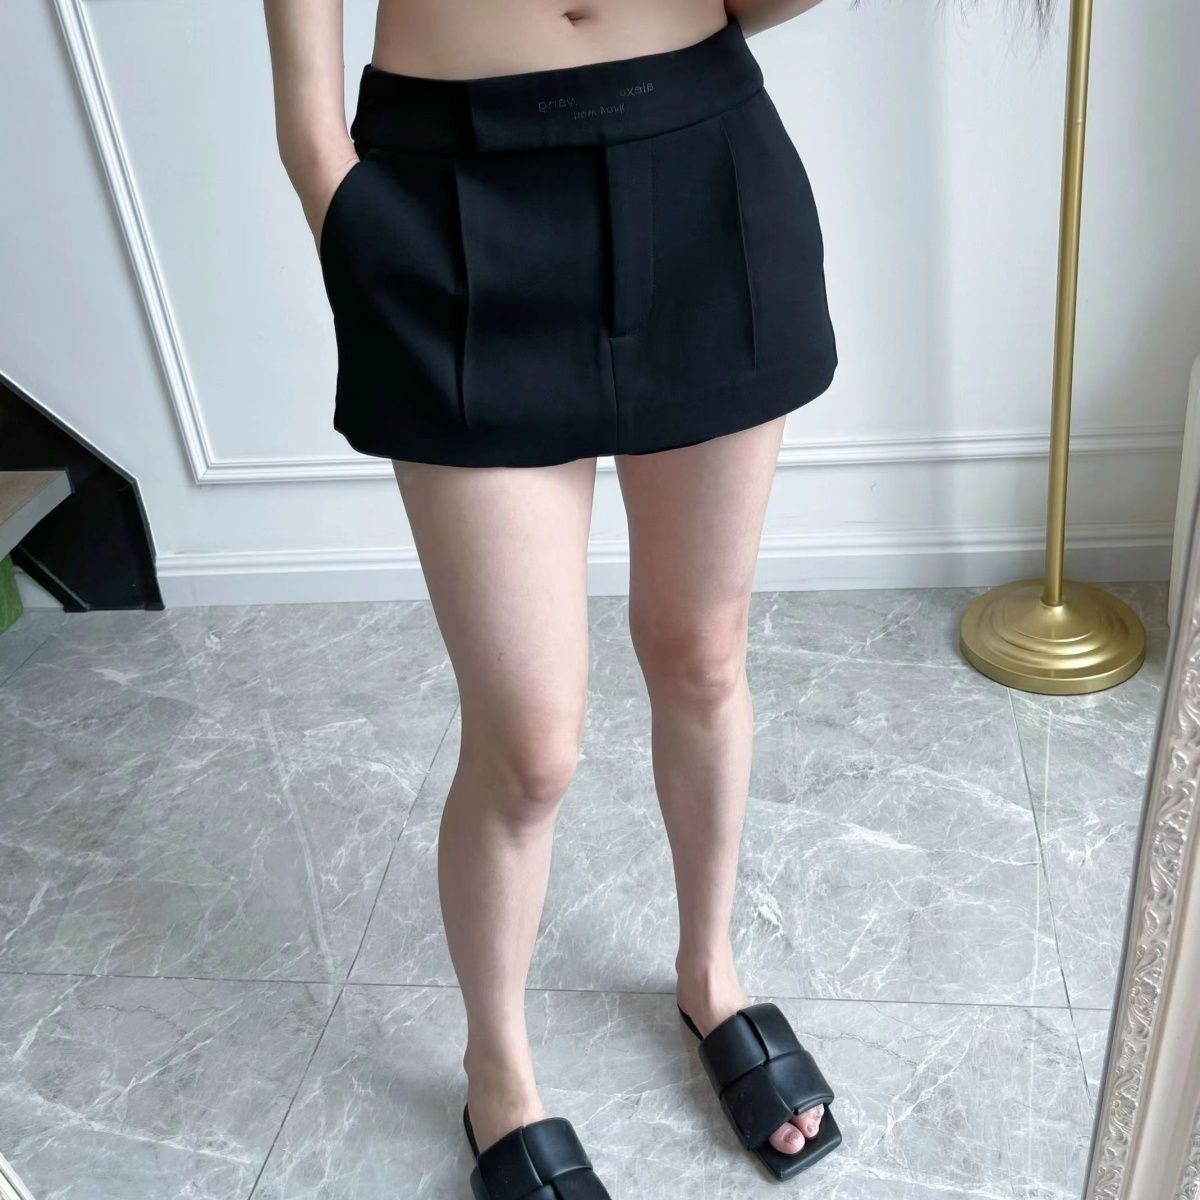 LETTRE LOGIAGE SEXE SEXE SEXE FEMMES Mini jupe courte avec shorts de sécurité à l'intérieur de SML